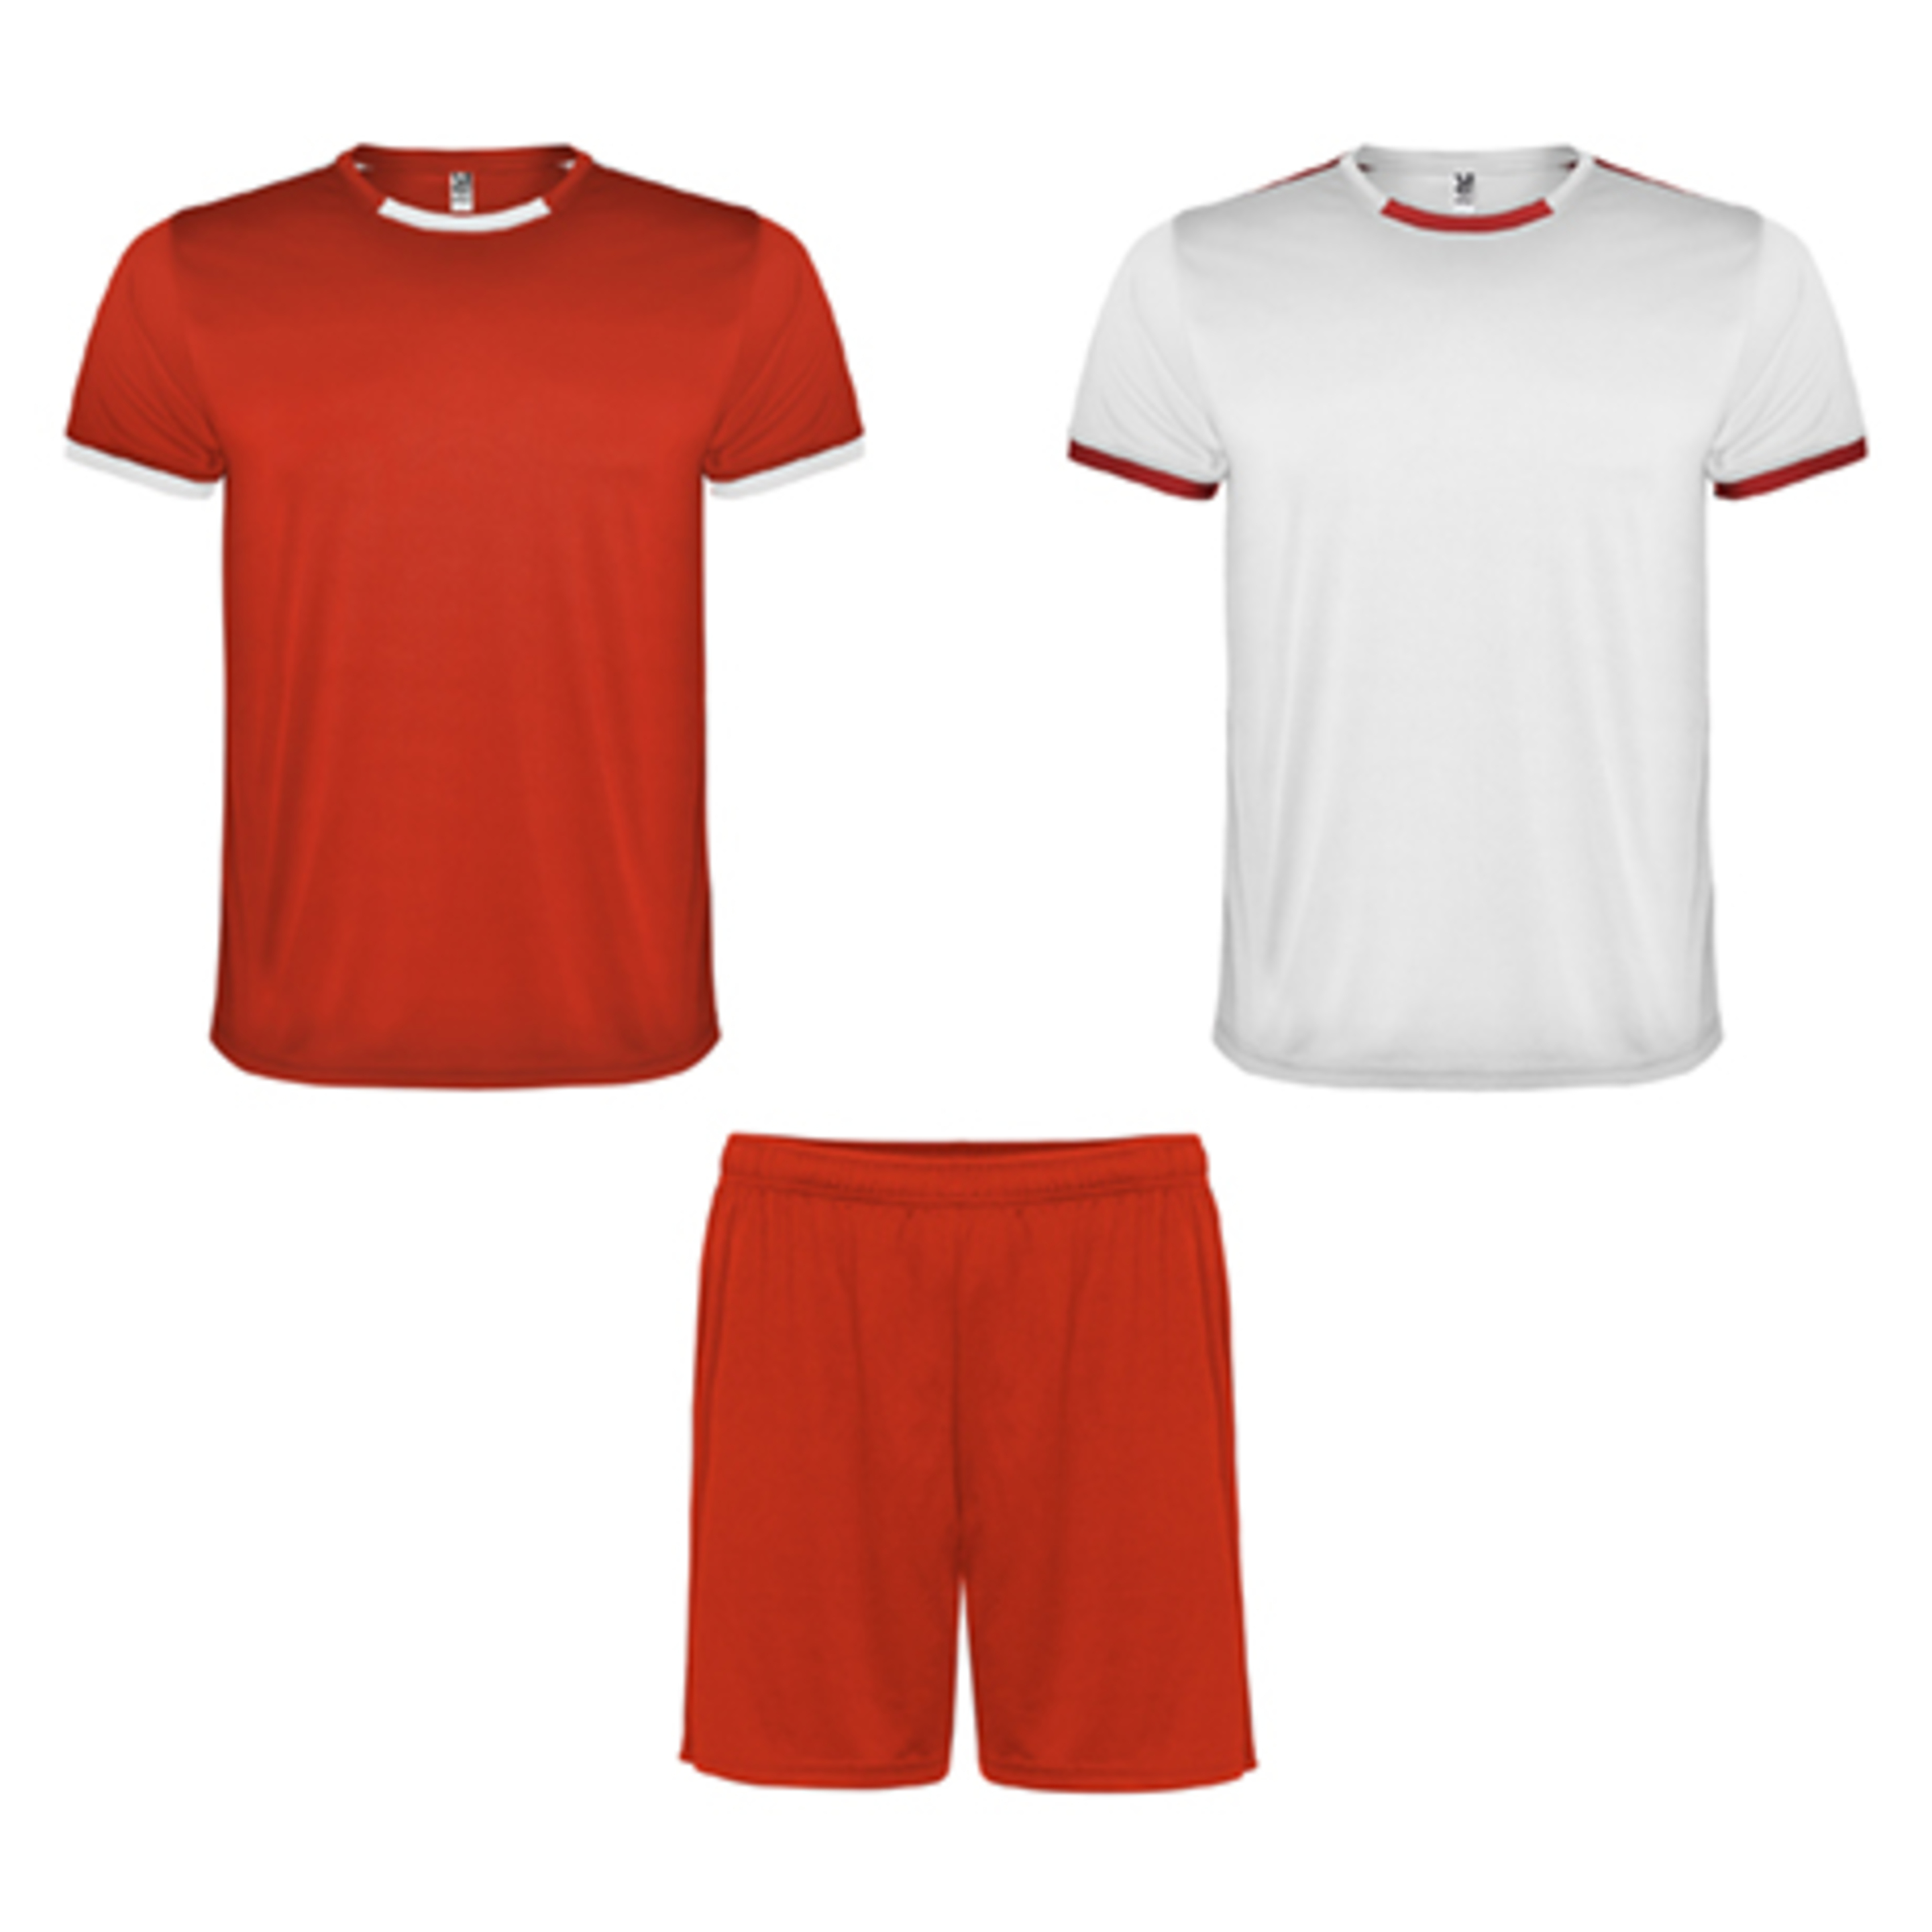 Conjunto Racing De 2 Camisetas Y 1 Pantalón - rojo - 